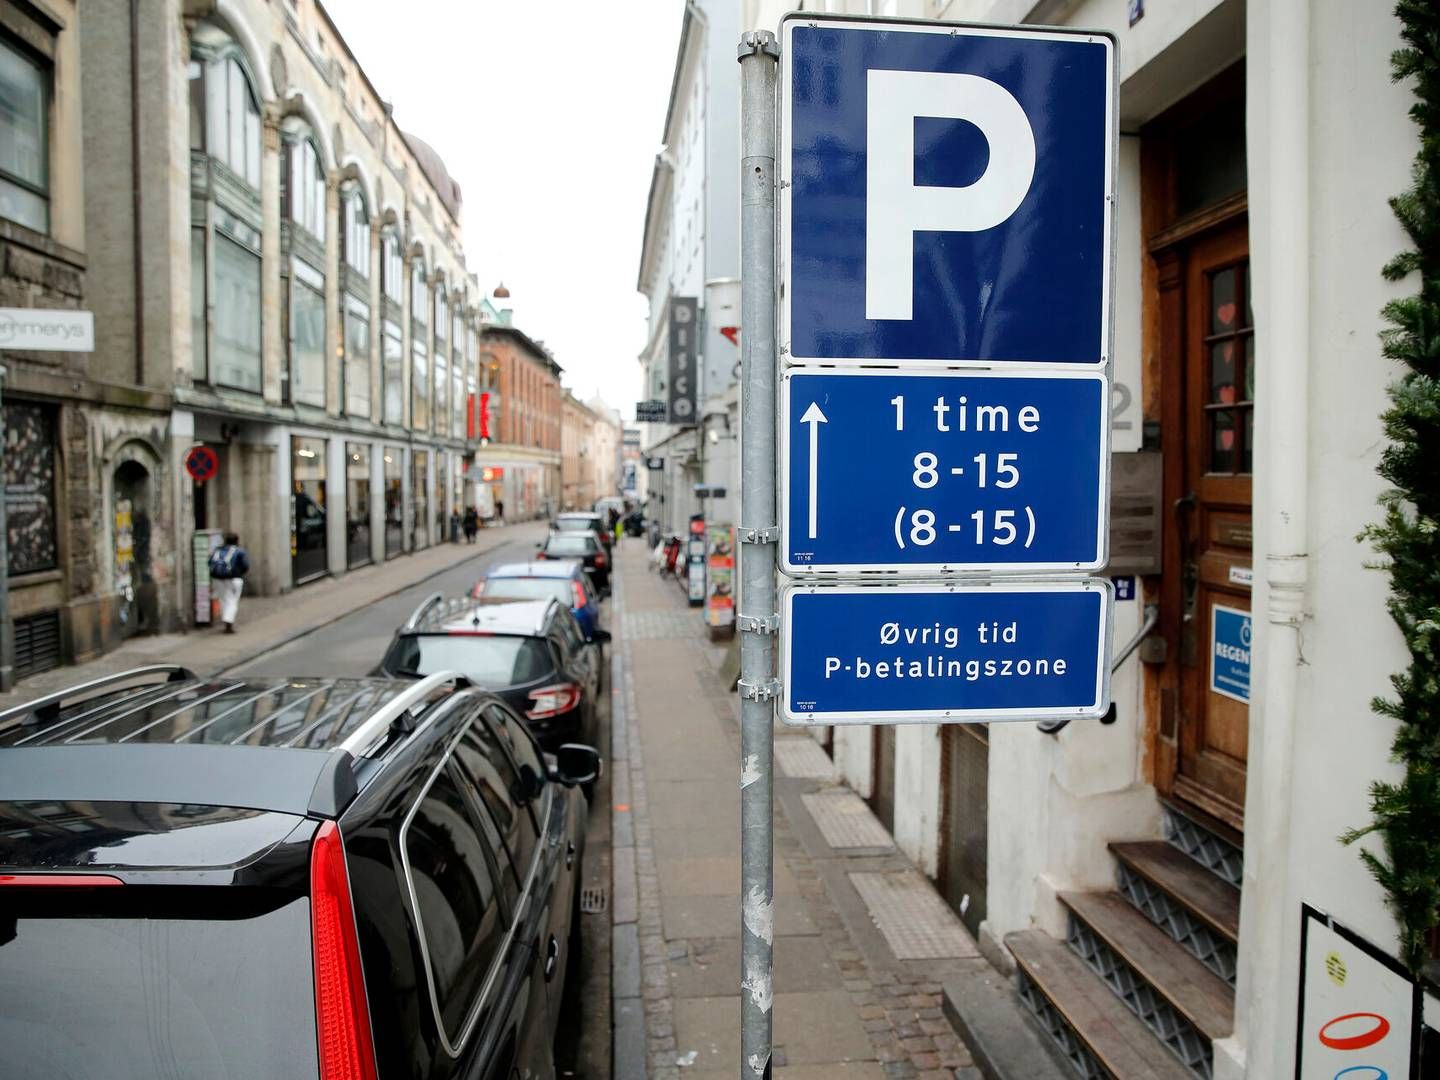 I de store byer vokser problemerne med at parkere. Ifølge FDM er der store problemer i både Aarhus, København og Odense. | Foto: Jens Dresling/Politiken/Ritzau Scanpix